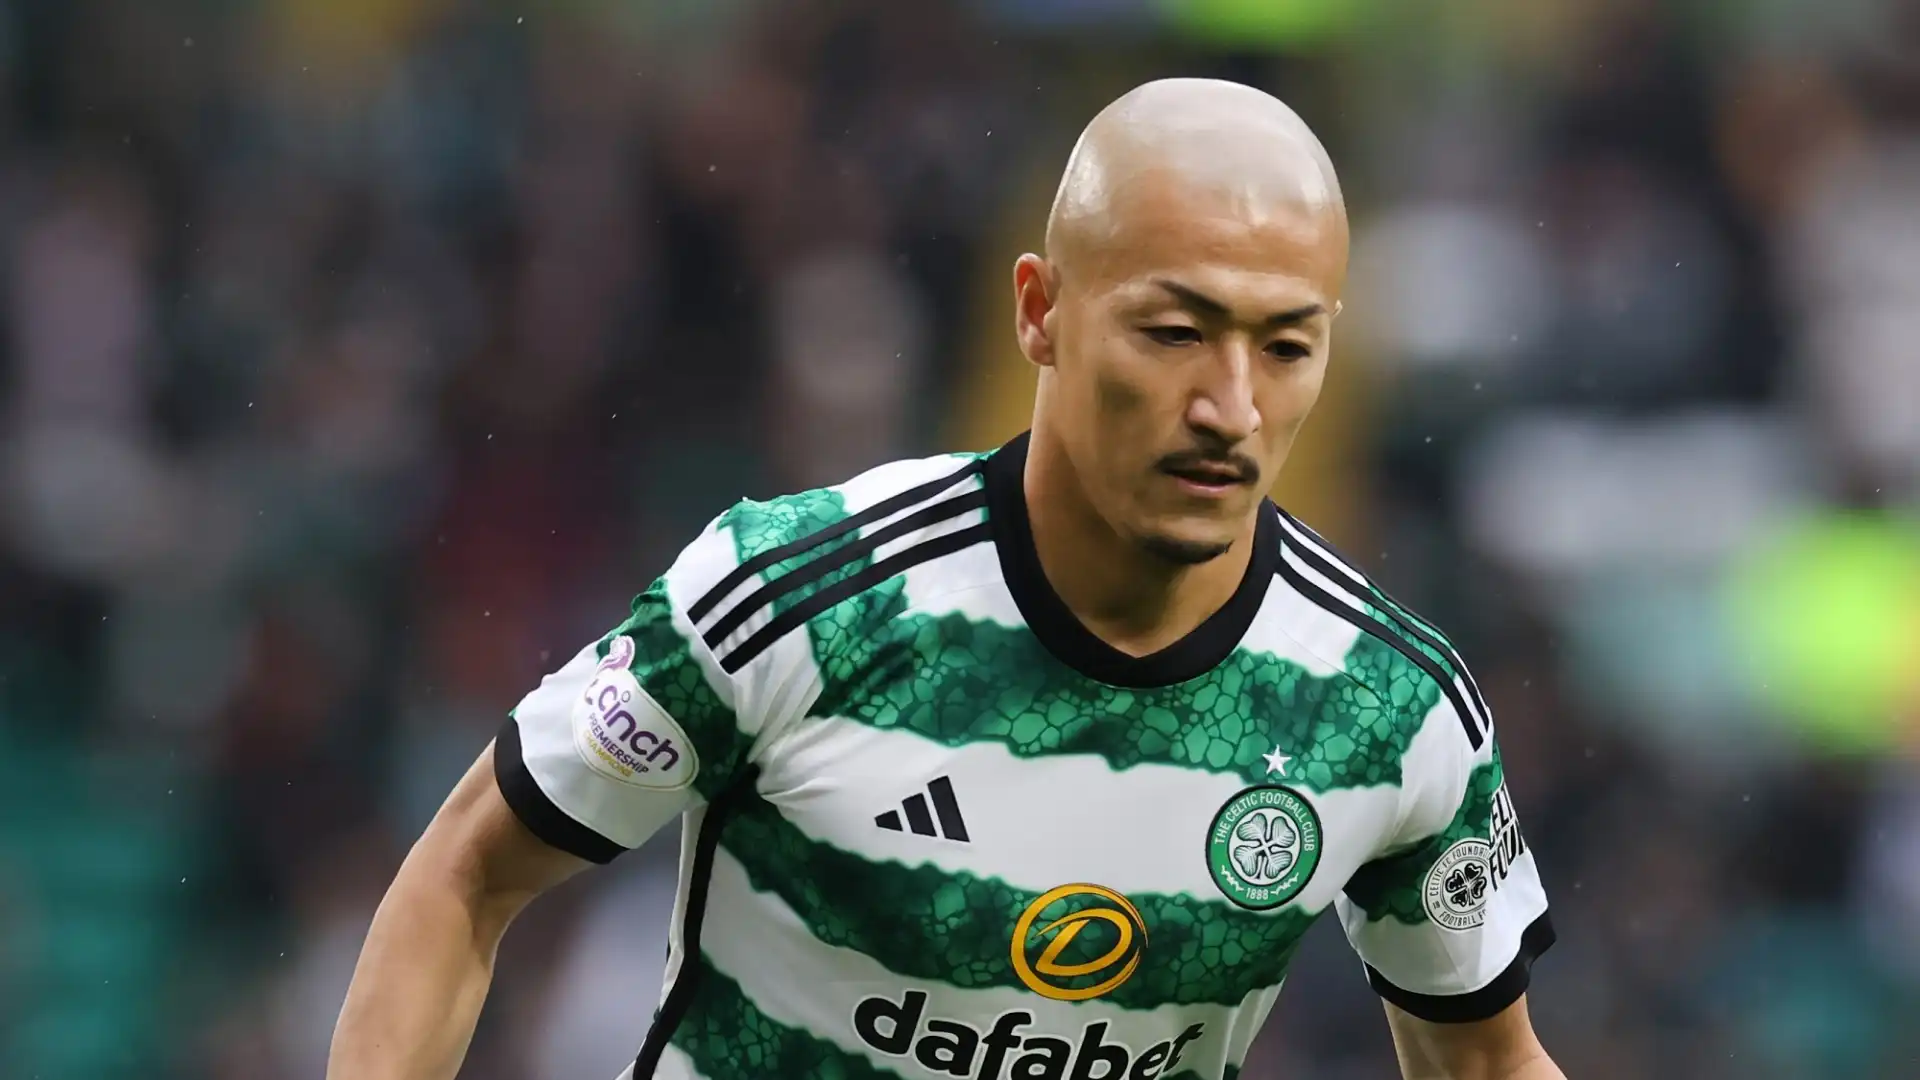 Daizen Maeda (Attaccante, Celtic): 10,9 milioni di euro. Ha vinto due campionato scozzesi con il Celtic